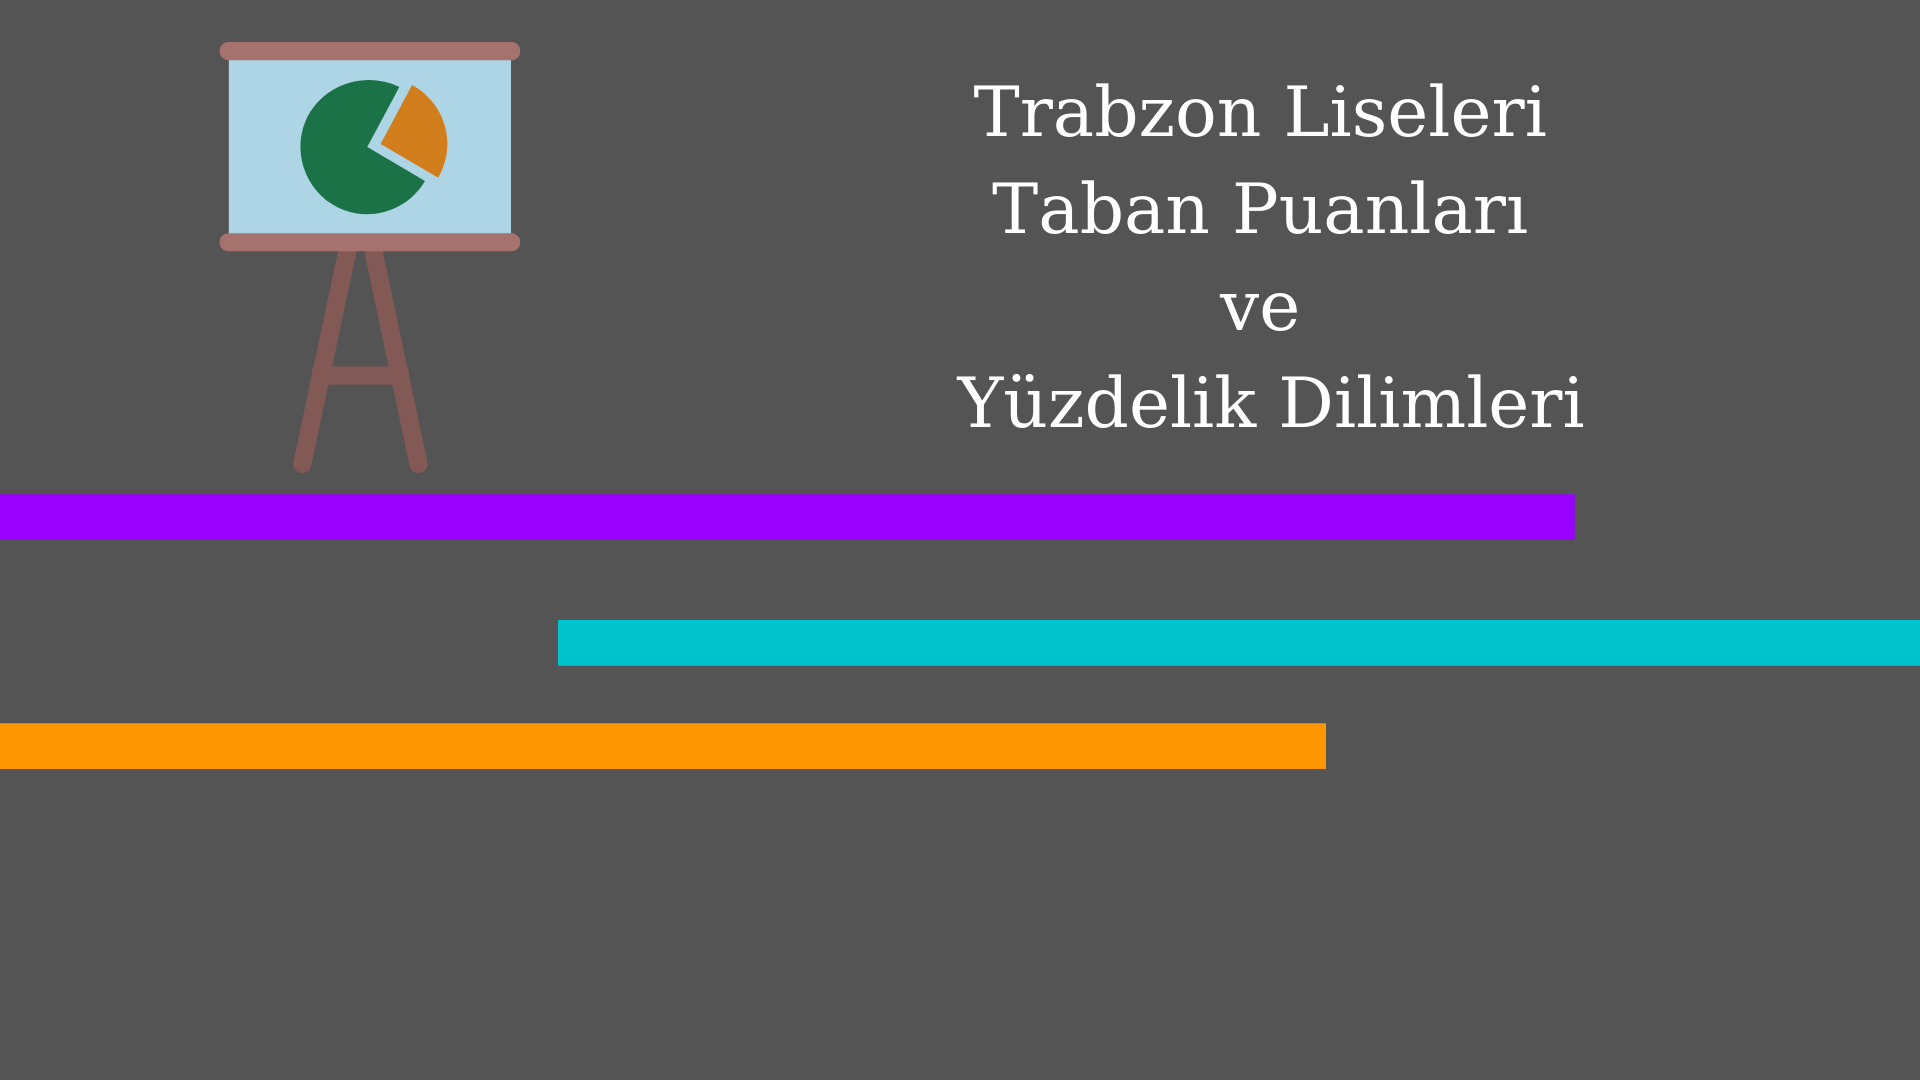 Trabzon Liseleri Taban Puanları ve Yüzdelik Dilimleri 2021